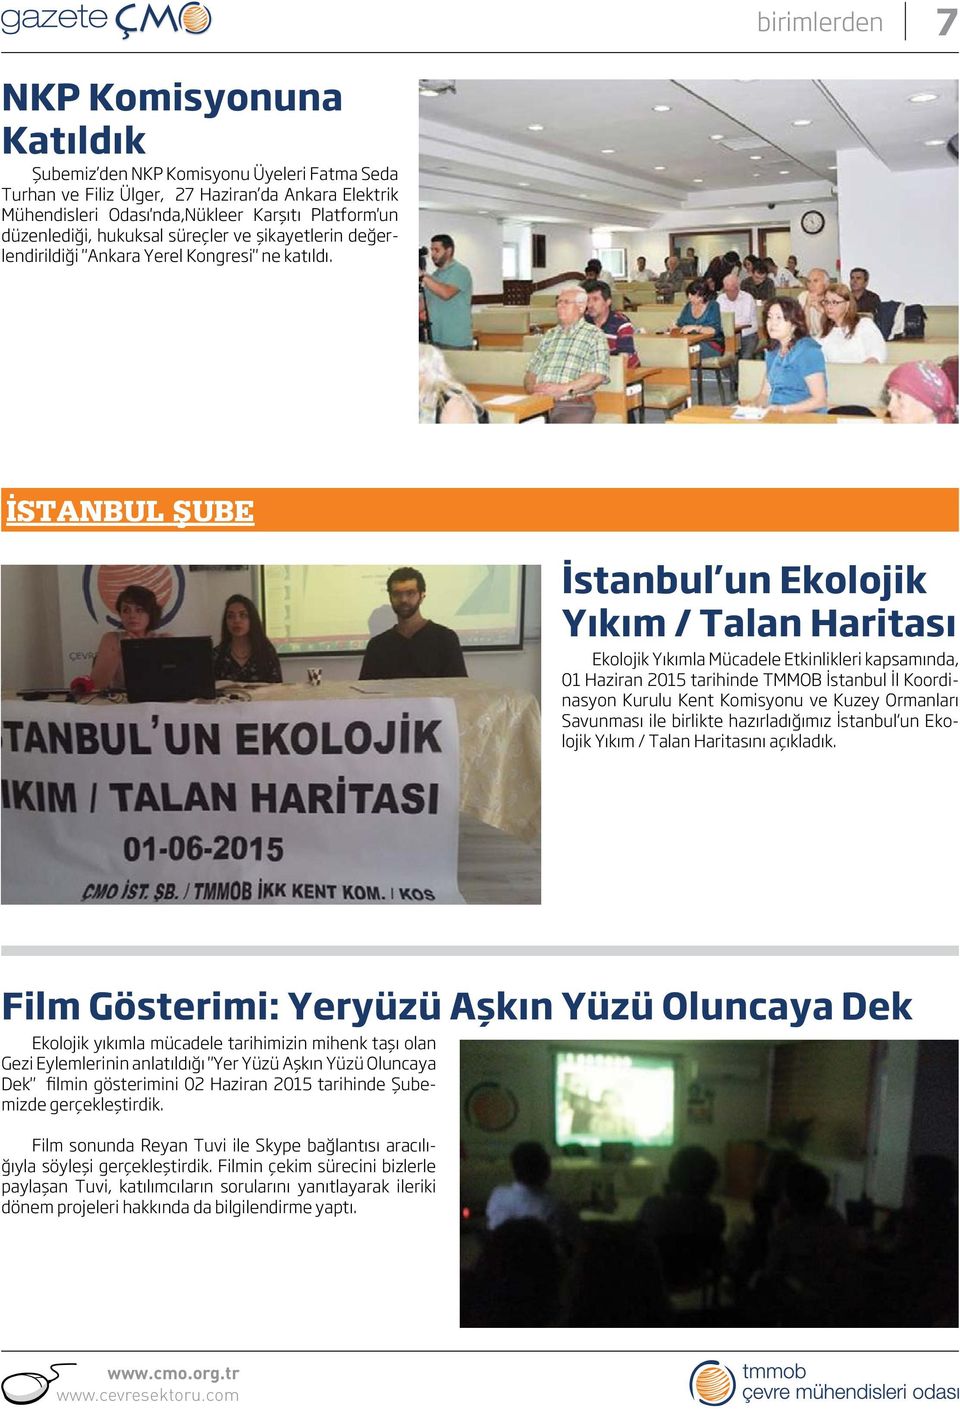 İSTANBUL ŞUBE İstanbul un Ekolojik Yıkım / Talan Haritası Ekolojik Yıkımla Mücadele Etkinlikleri kapsamında, 01 Haziran 2015 tarihinde TMMOB İstanbul İl Koordinasyon Kurulu Kent Komisyonu ve Kuzey